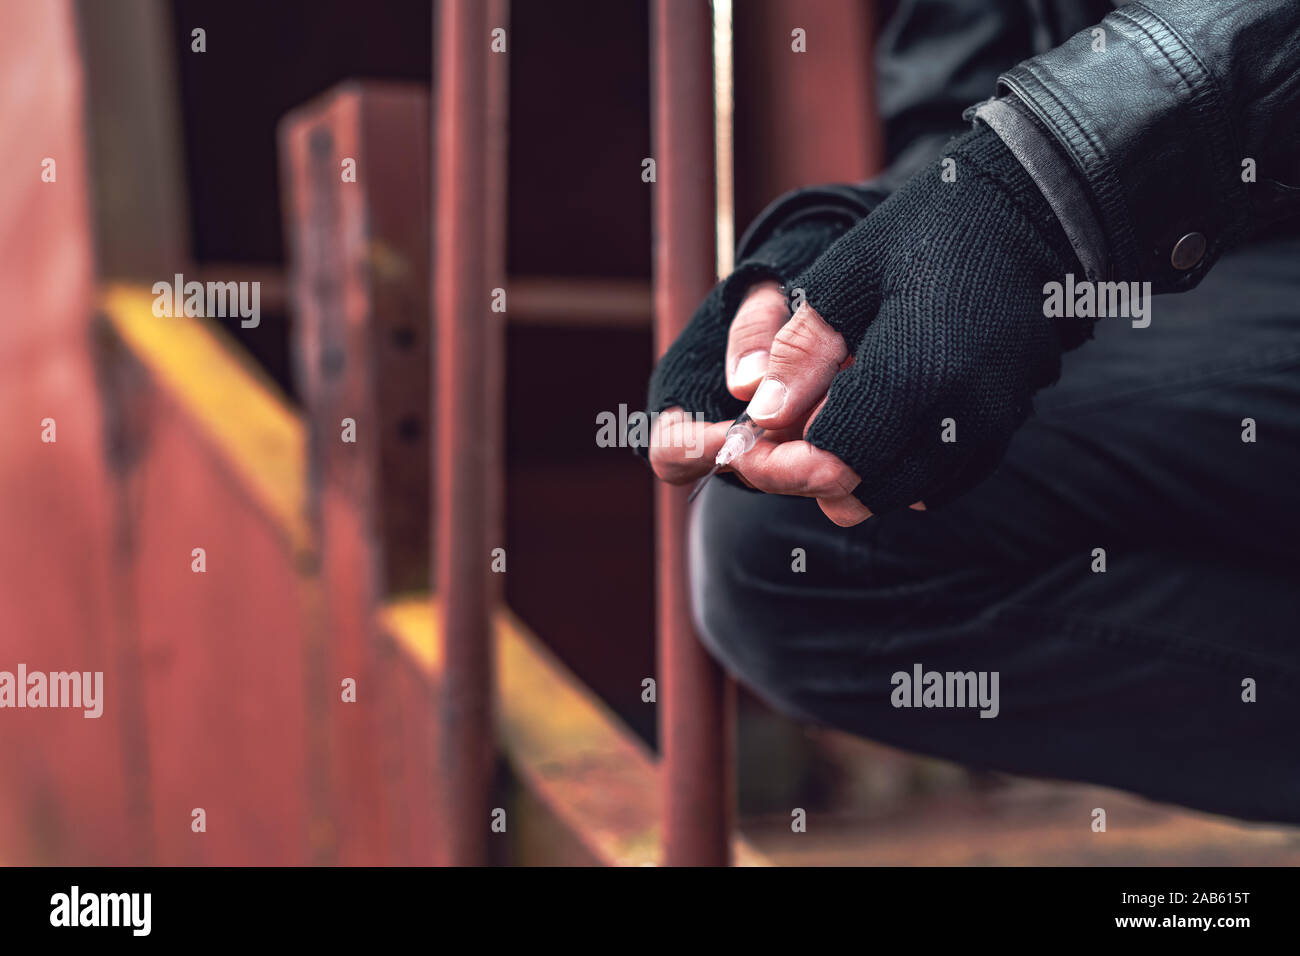 Le toxicomane à l'héroïne d'une seringue, Close up of hands with selective focus Banque D'Images